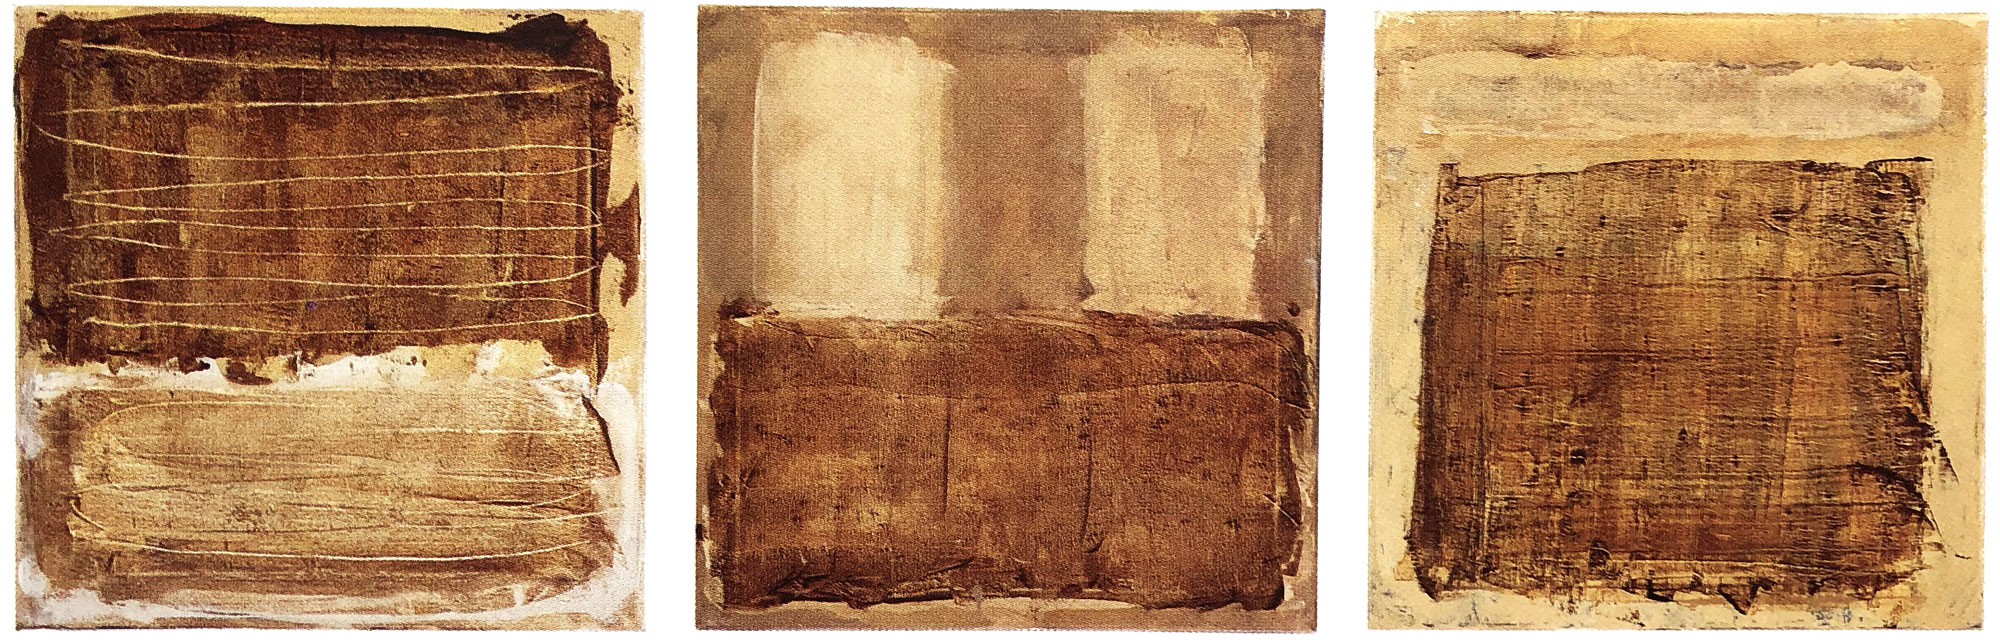 Monochrom-Triptychon-Öl-auf-Leinwand-je-50×60-2000